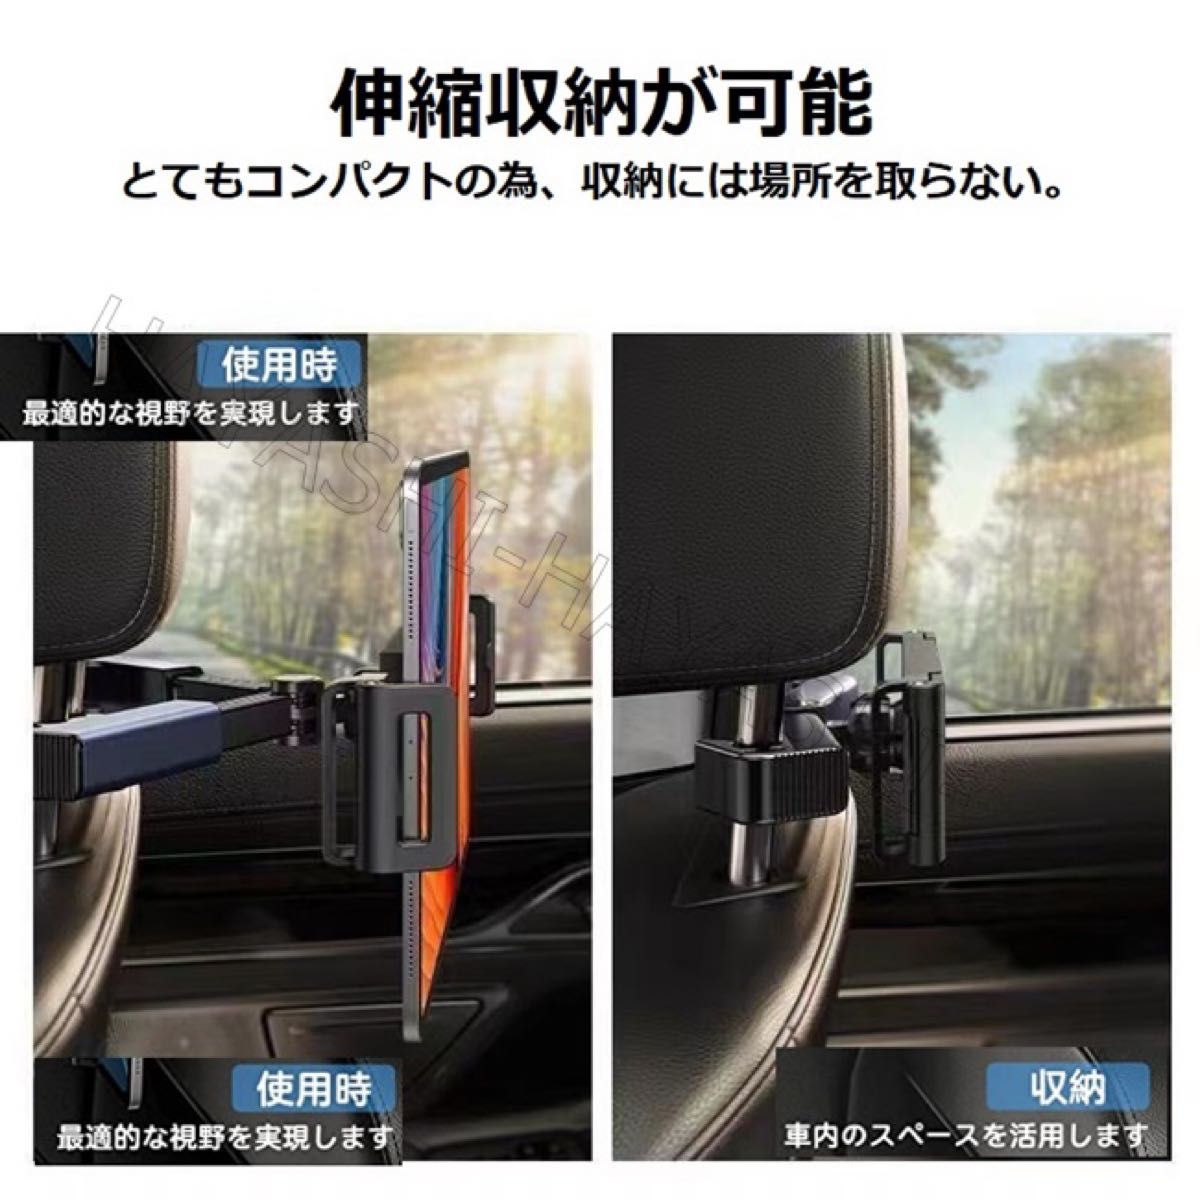 タブレットホルダー 後部座席用 車載ホルダー 伸縮アーム ipad スタンド 携帯スタンド 車 後部座席 折り畳み式 360度回転